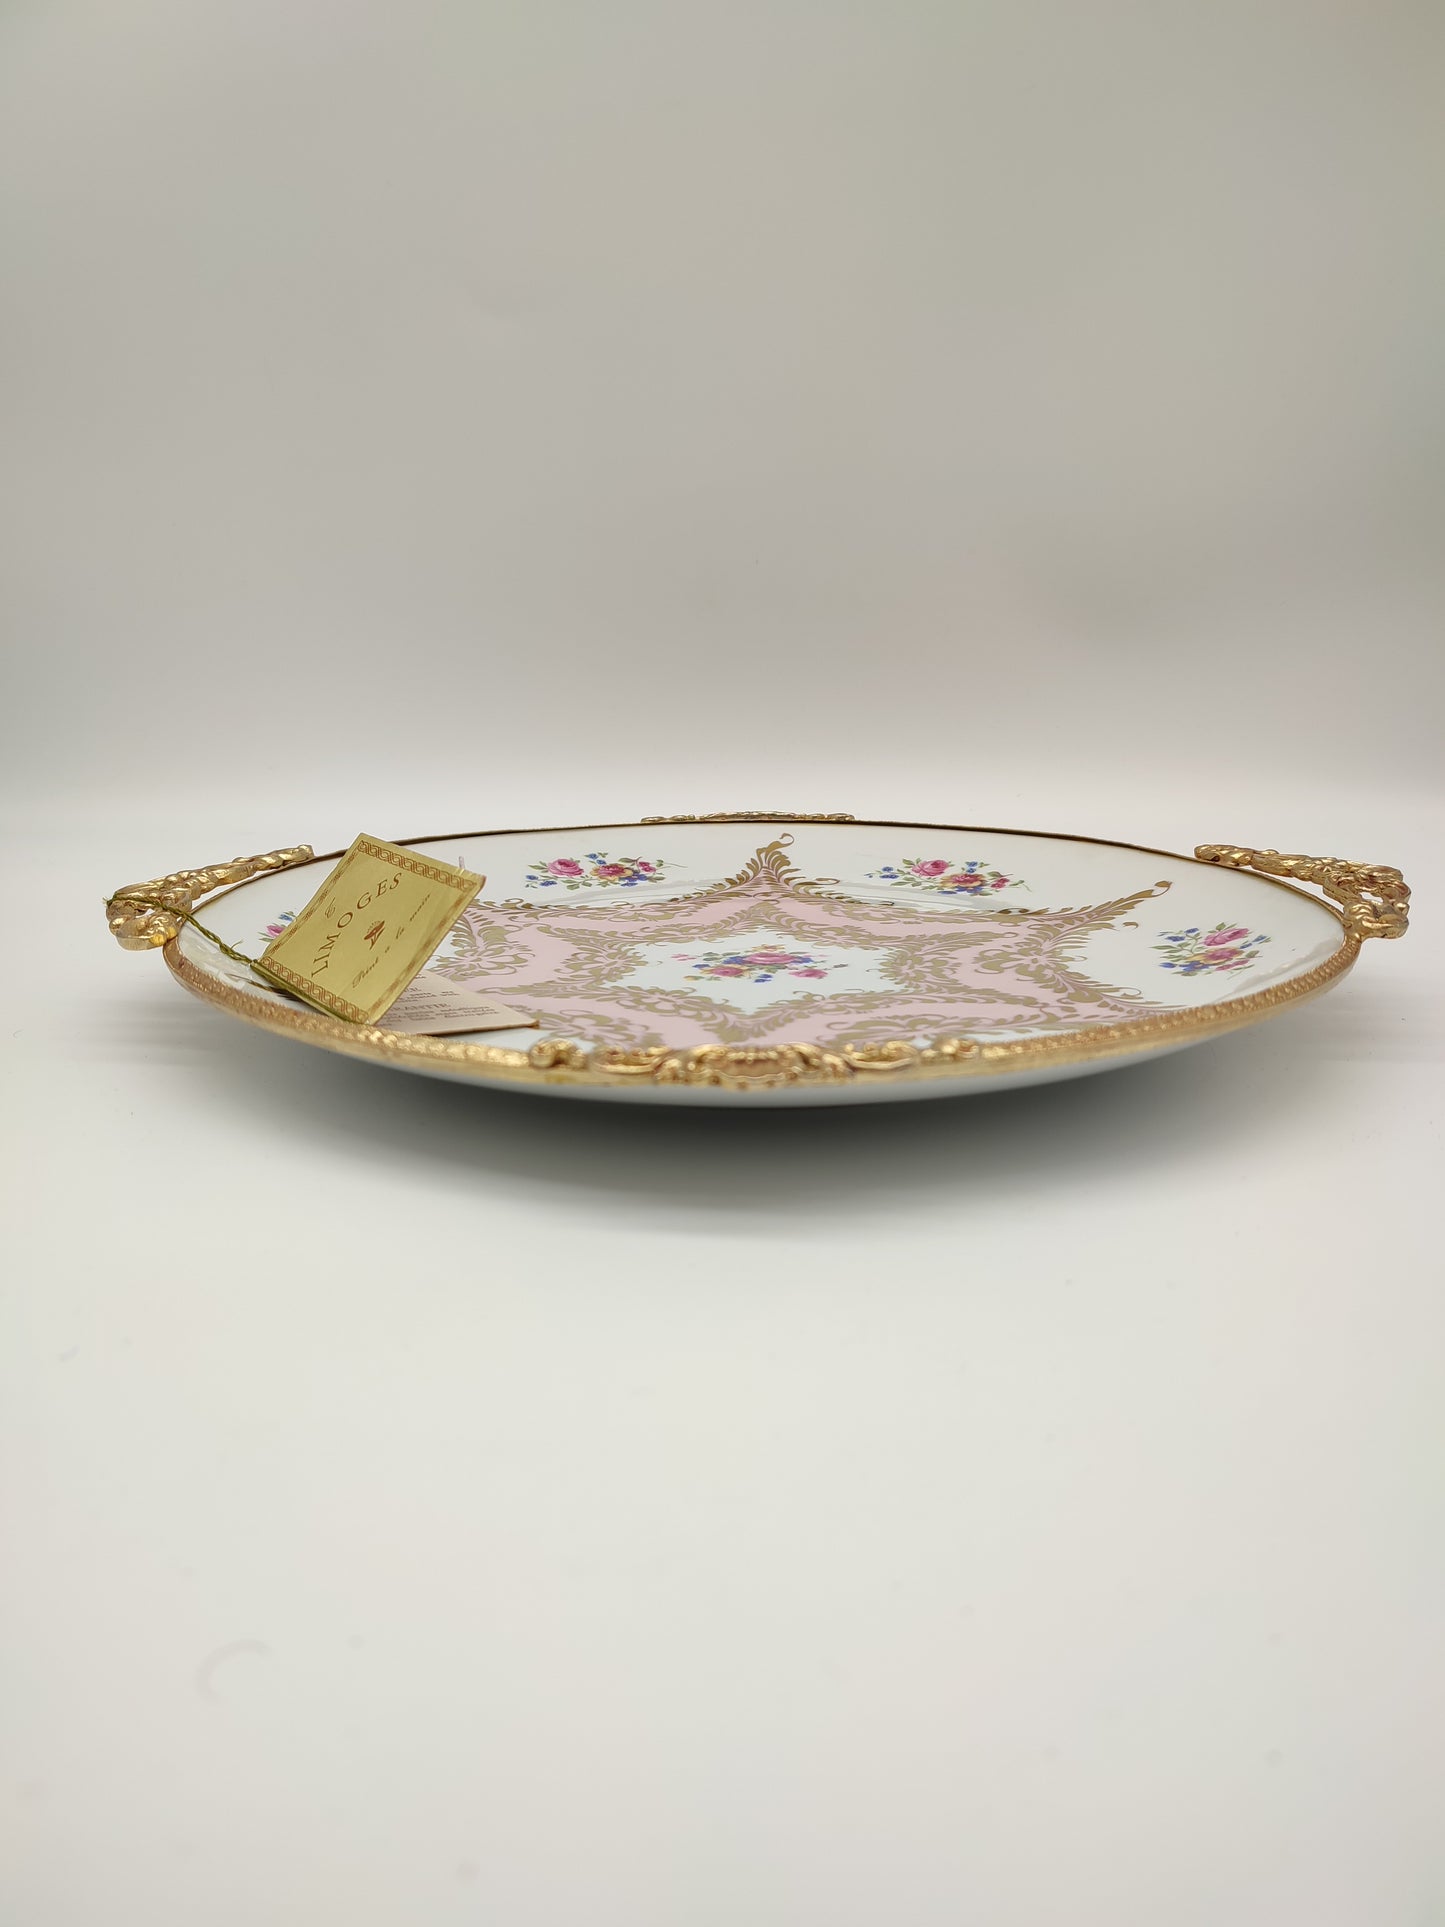 69103 Piatto decorativo in ceramica Limoges